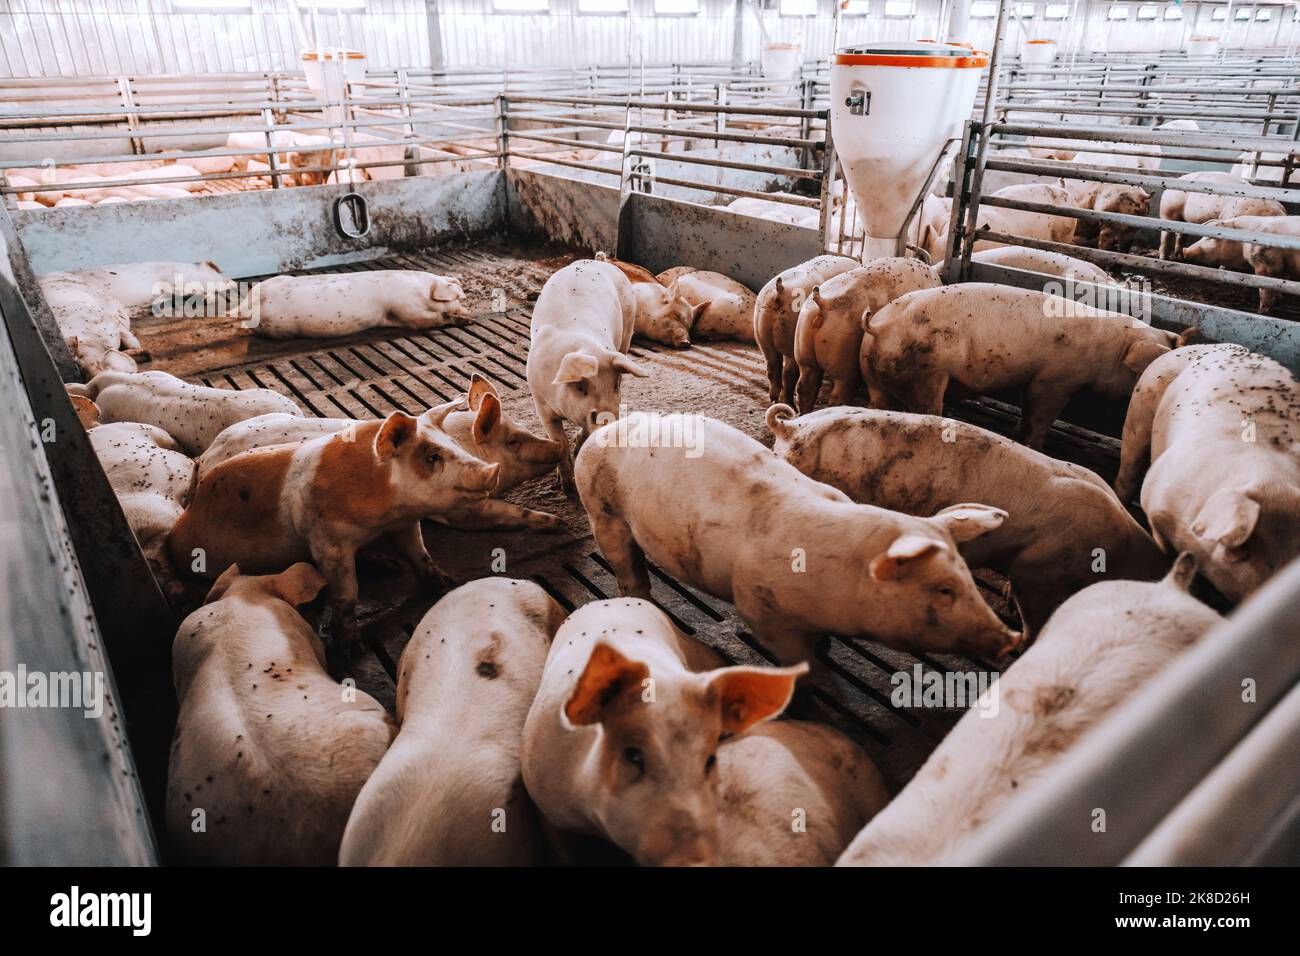 Il y a beaucoup de cochons dans un hangar d'animaux en train de manger, de se tenir debout et de se Concept de l'industrie de la viande. Banque D'Images